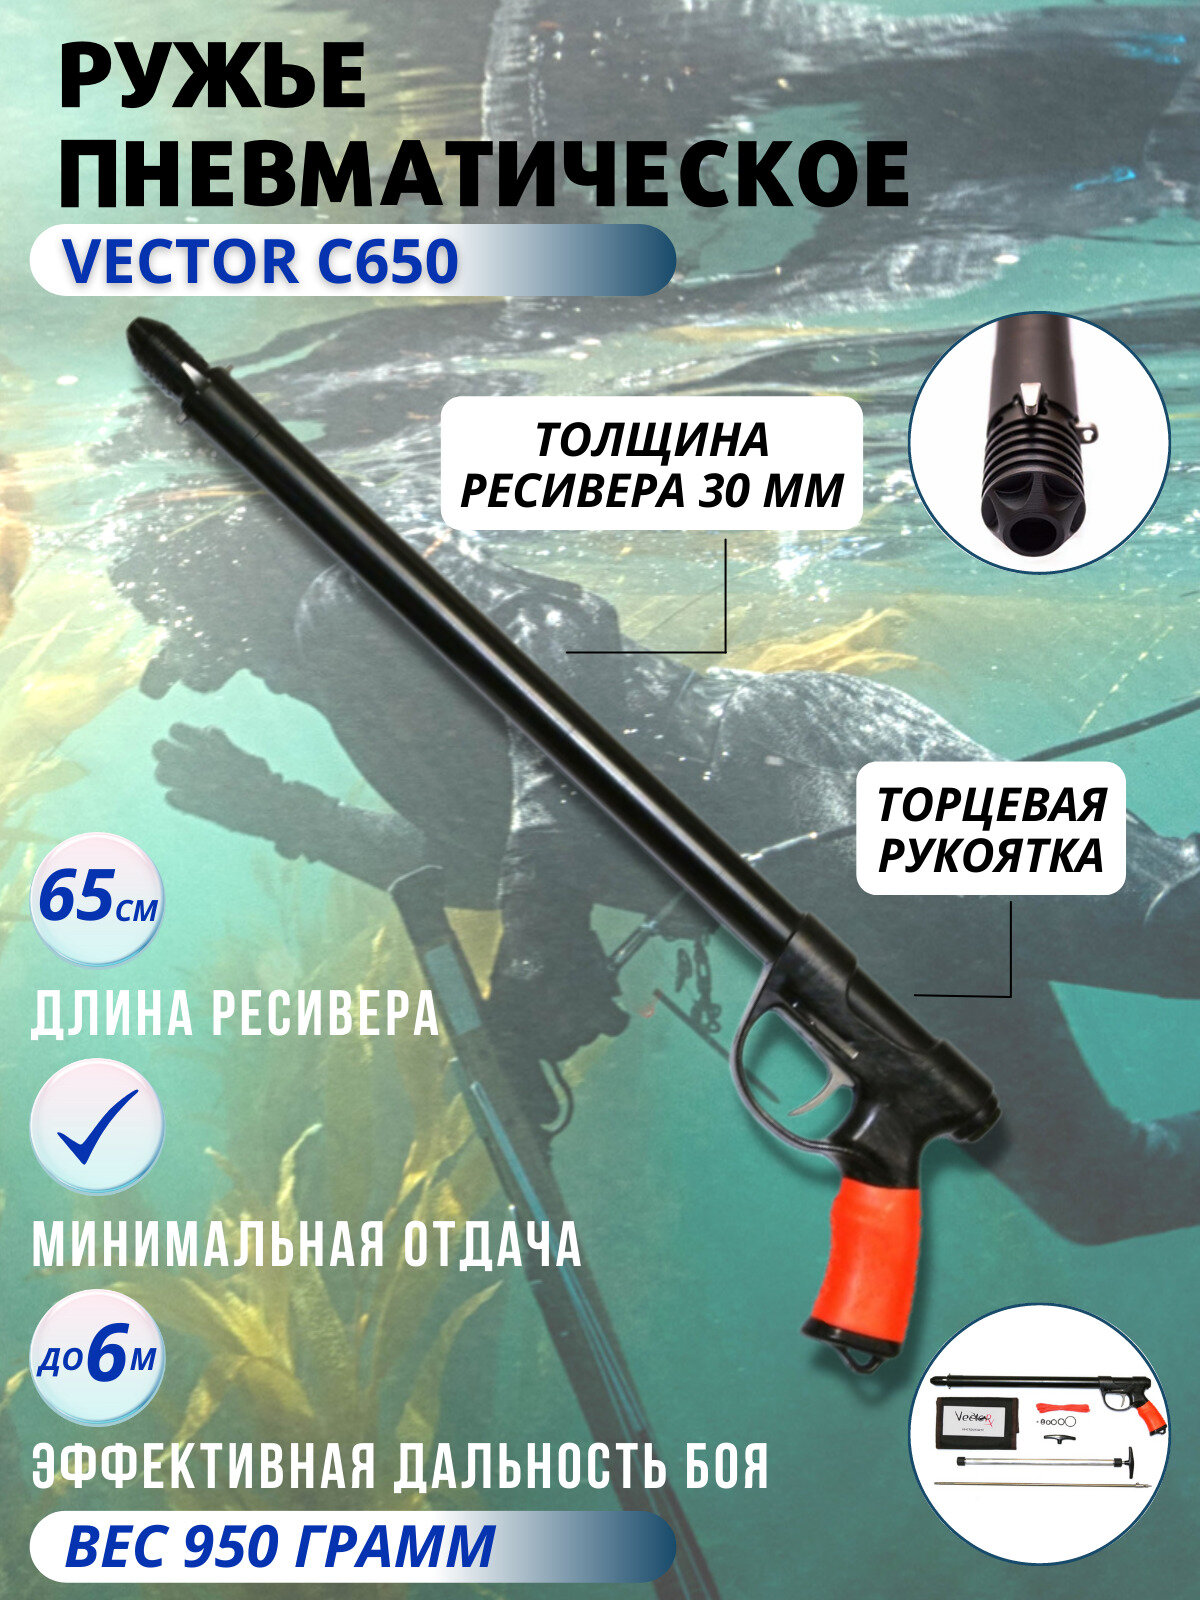 Ружье пневматическое для подводной охоты VECTOR C 650, торцевая рукоятка